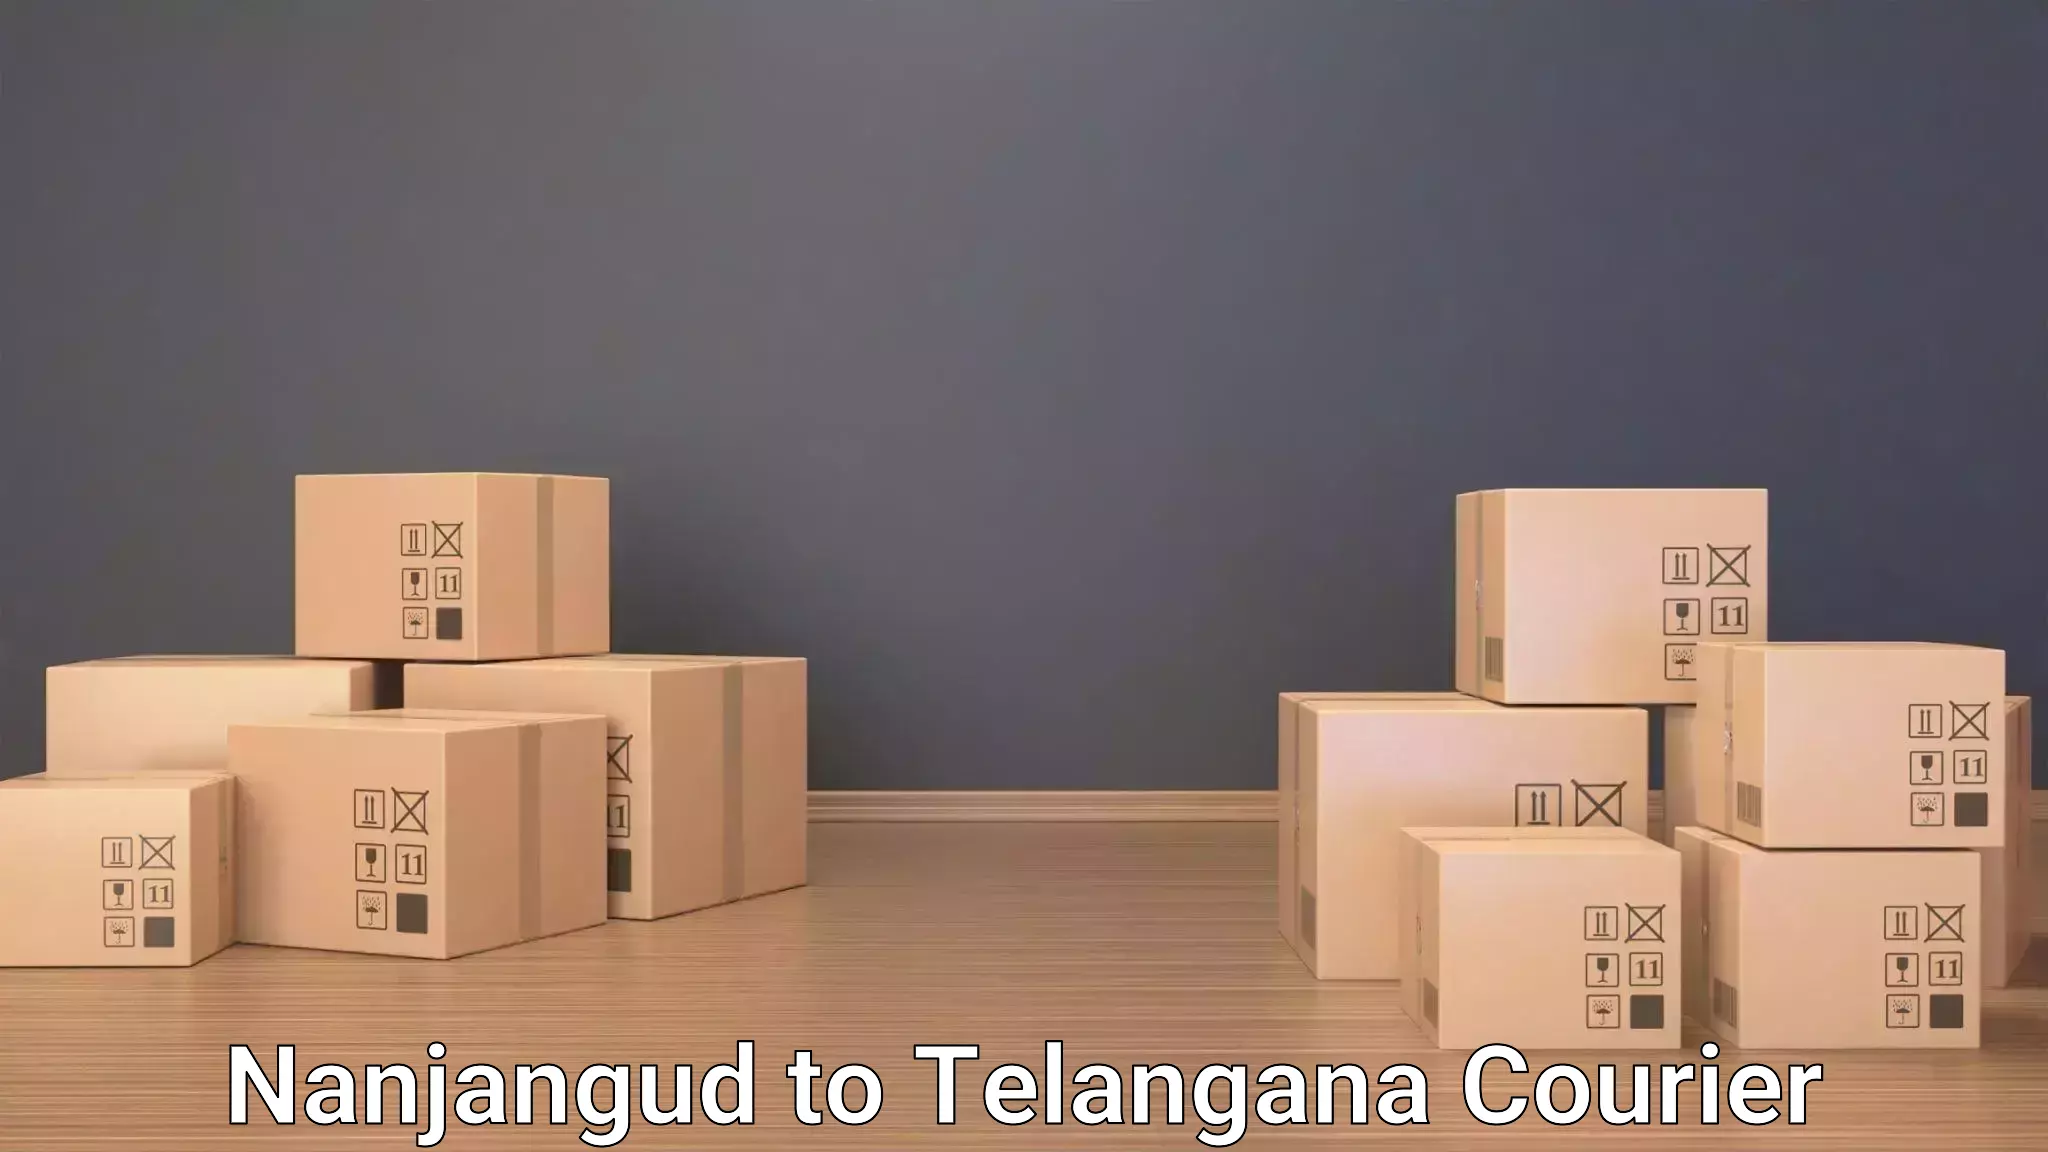 Baggage transport professionals in Nanjangud to Dharmapuri Jagtial